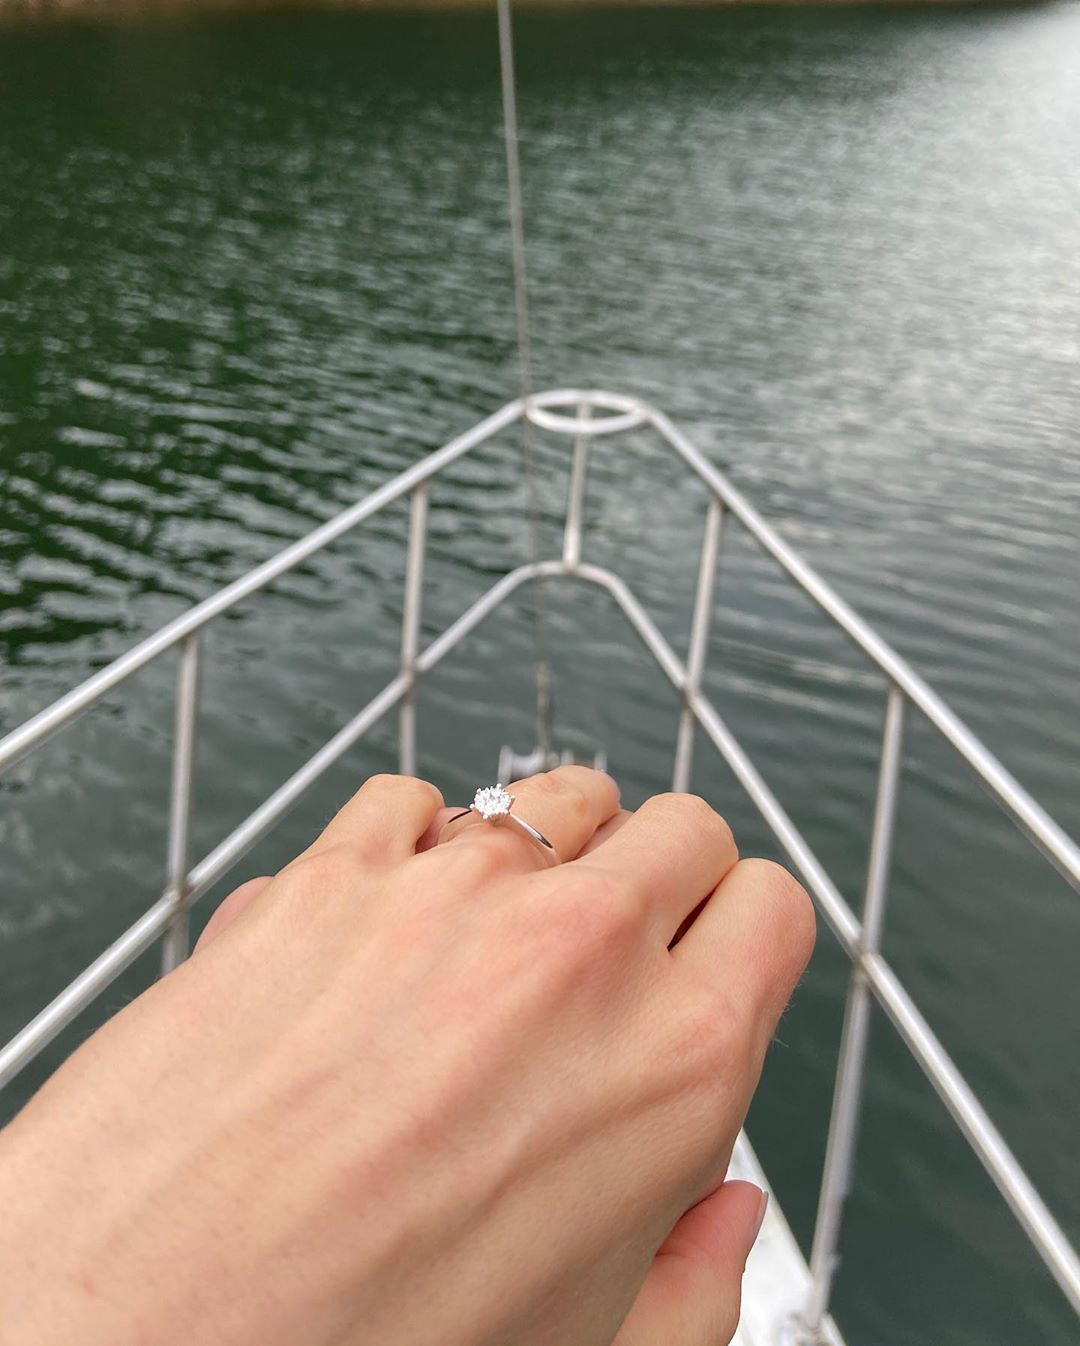 Нора показа красивия годежен пръстен в Инстаграм сн. Инстаграм